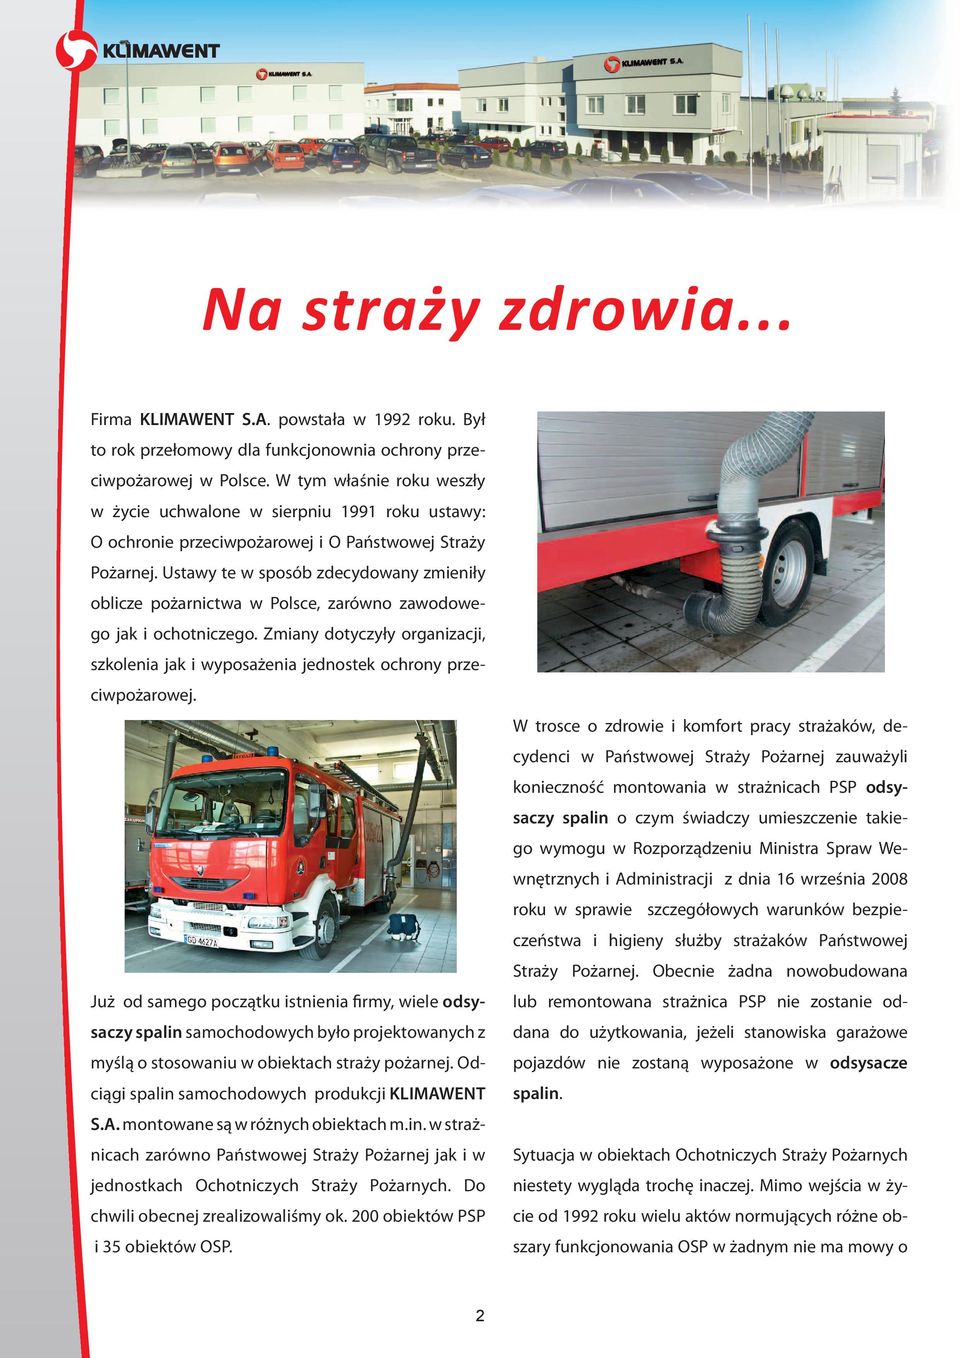 Ustawy te w sposób zdecydowany zmieniły oblicze pożarnictwa w Polsce, zarówno zawodowego jak i ochotniczego.